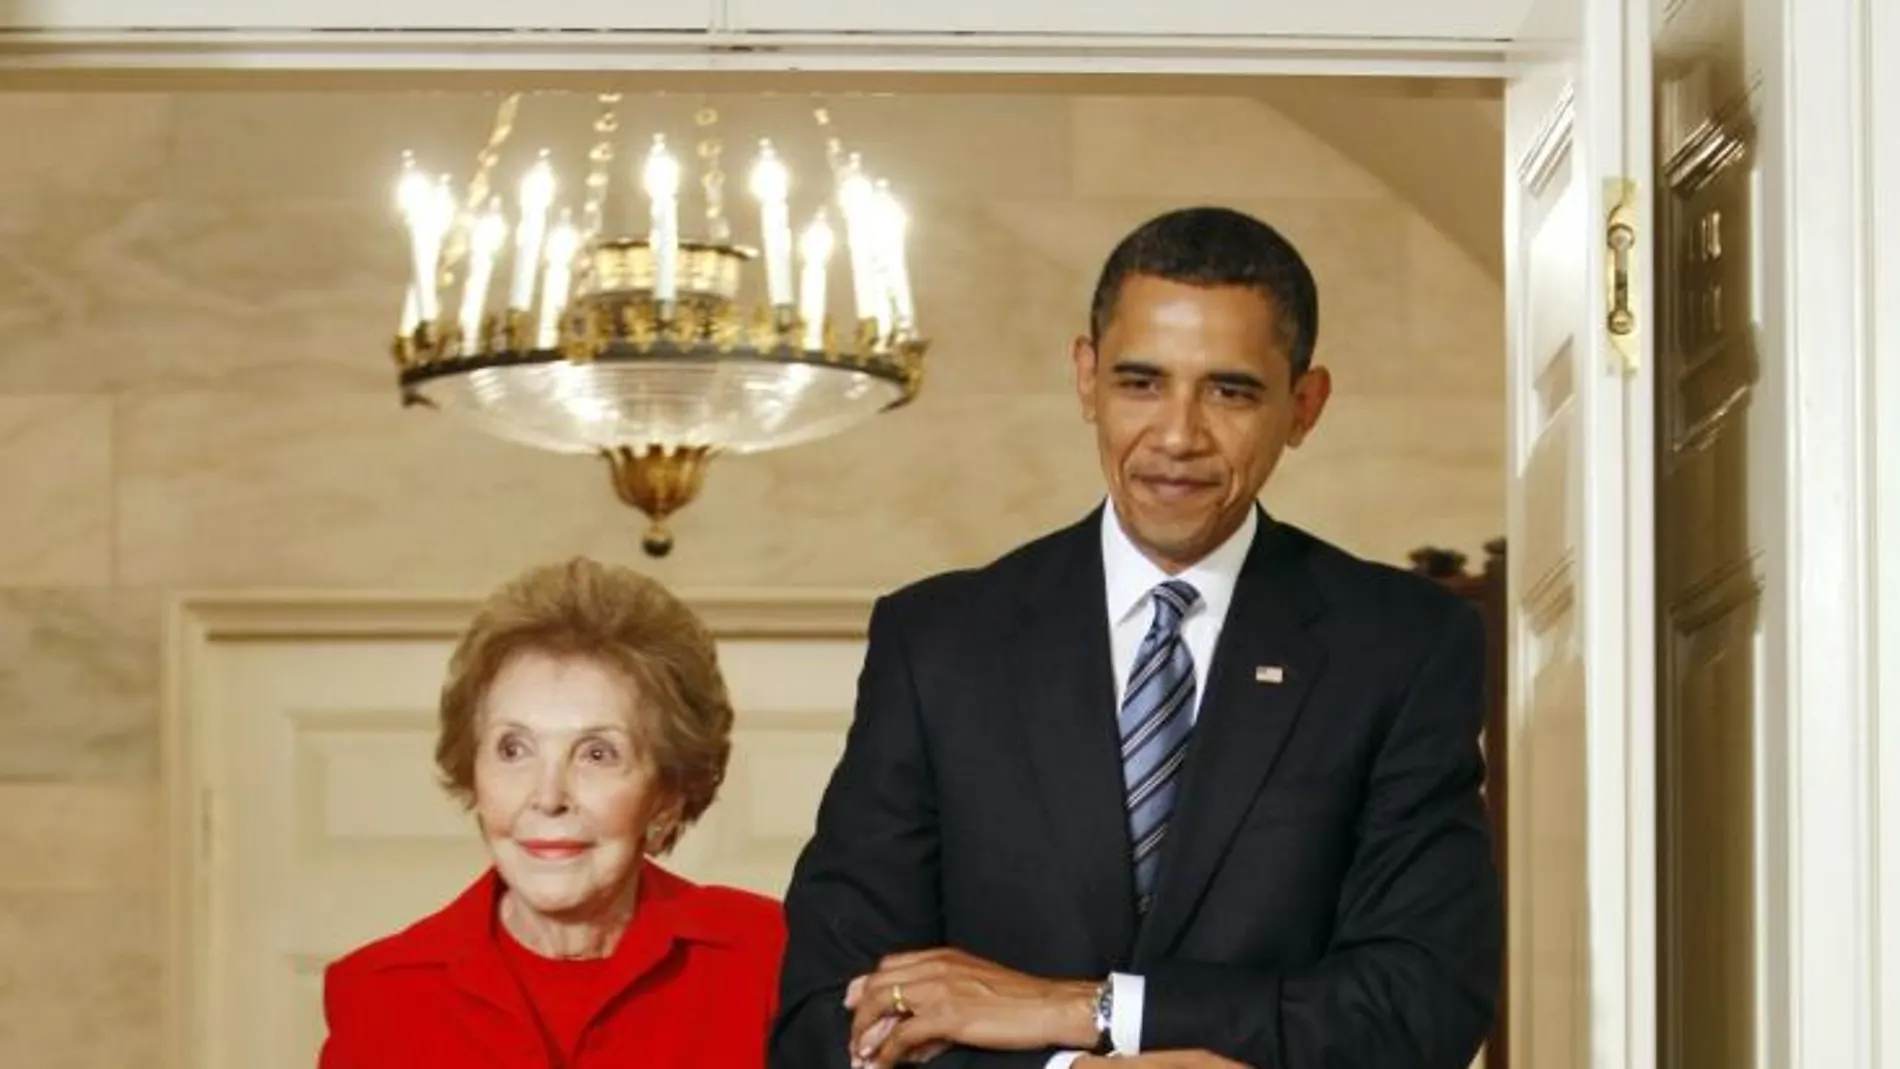 Barack Obama acompaña a Nancy Reagan en una imagen de 2009.